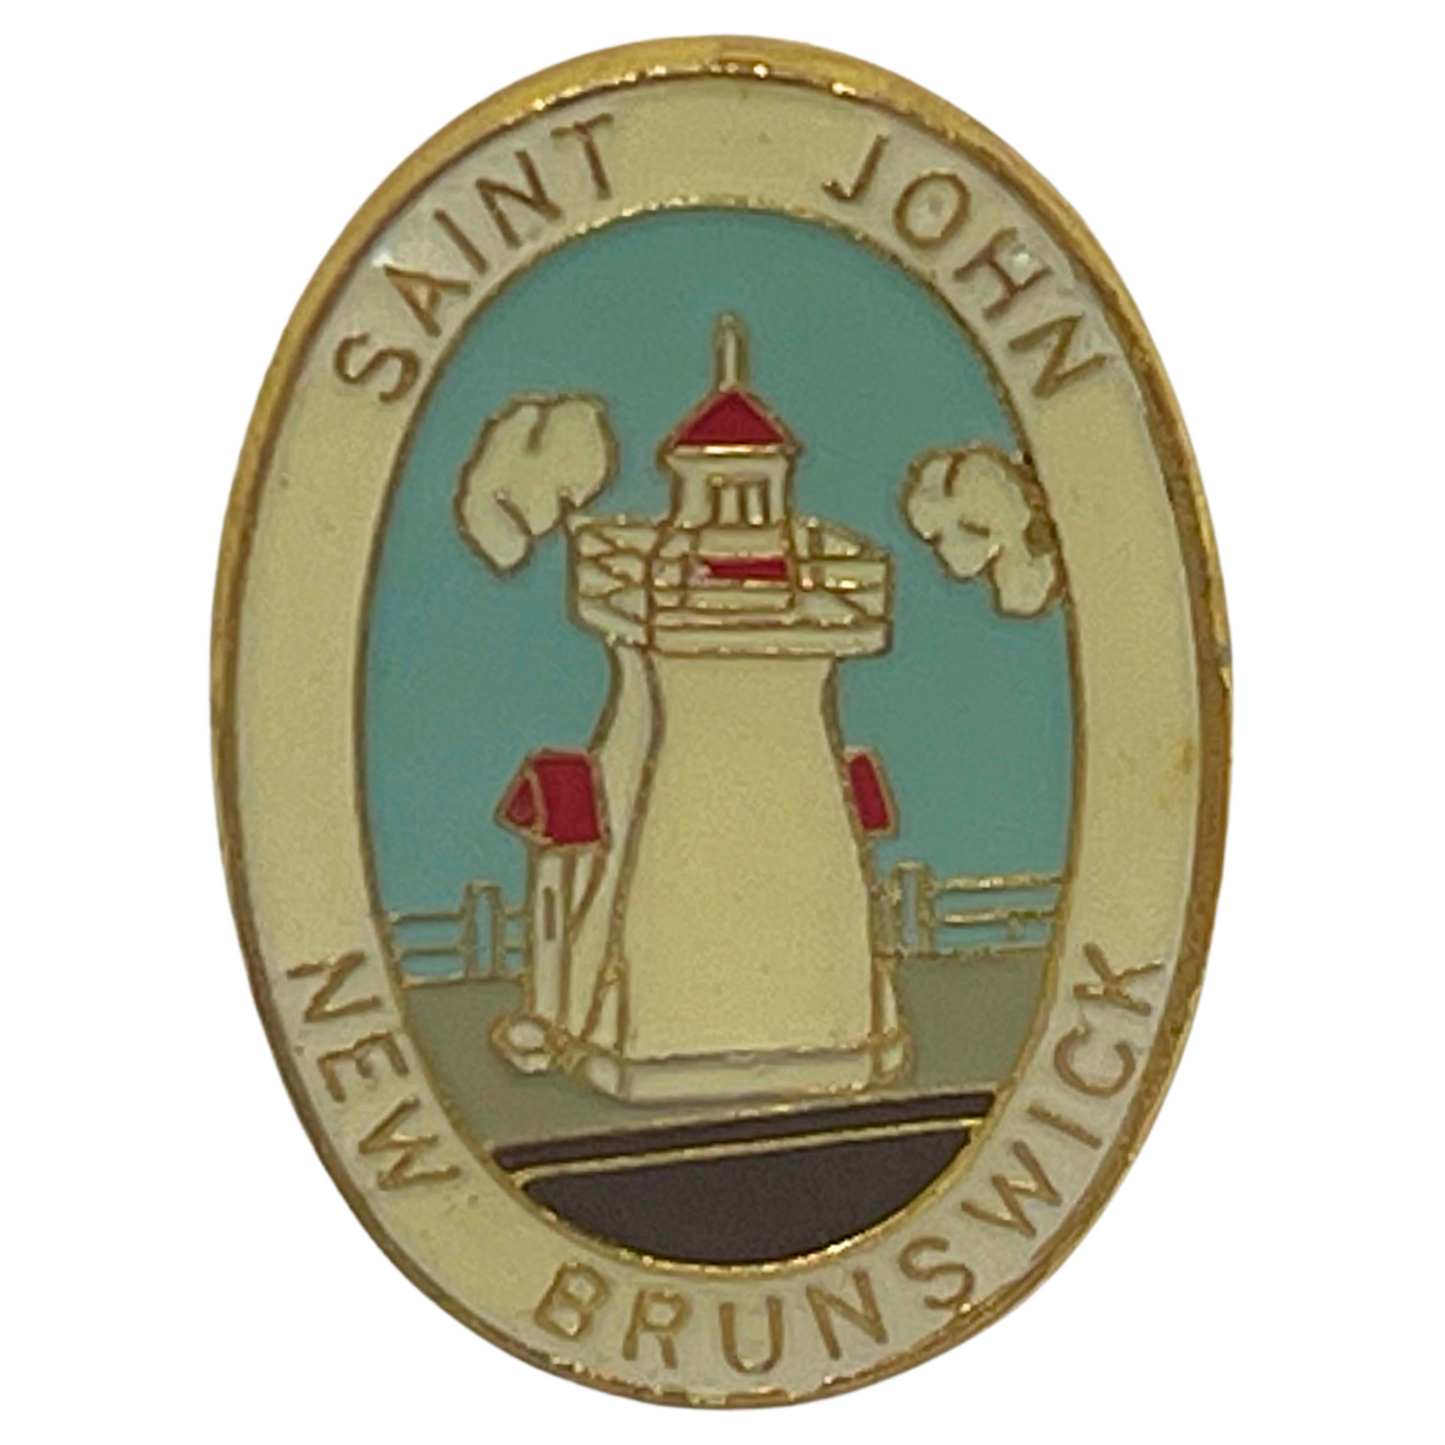 Saint John New Brunswick Lighthouse Souvenir Cities & States Lapel Pin SP5